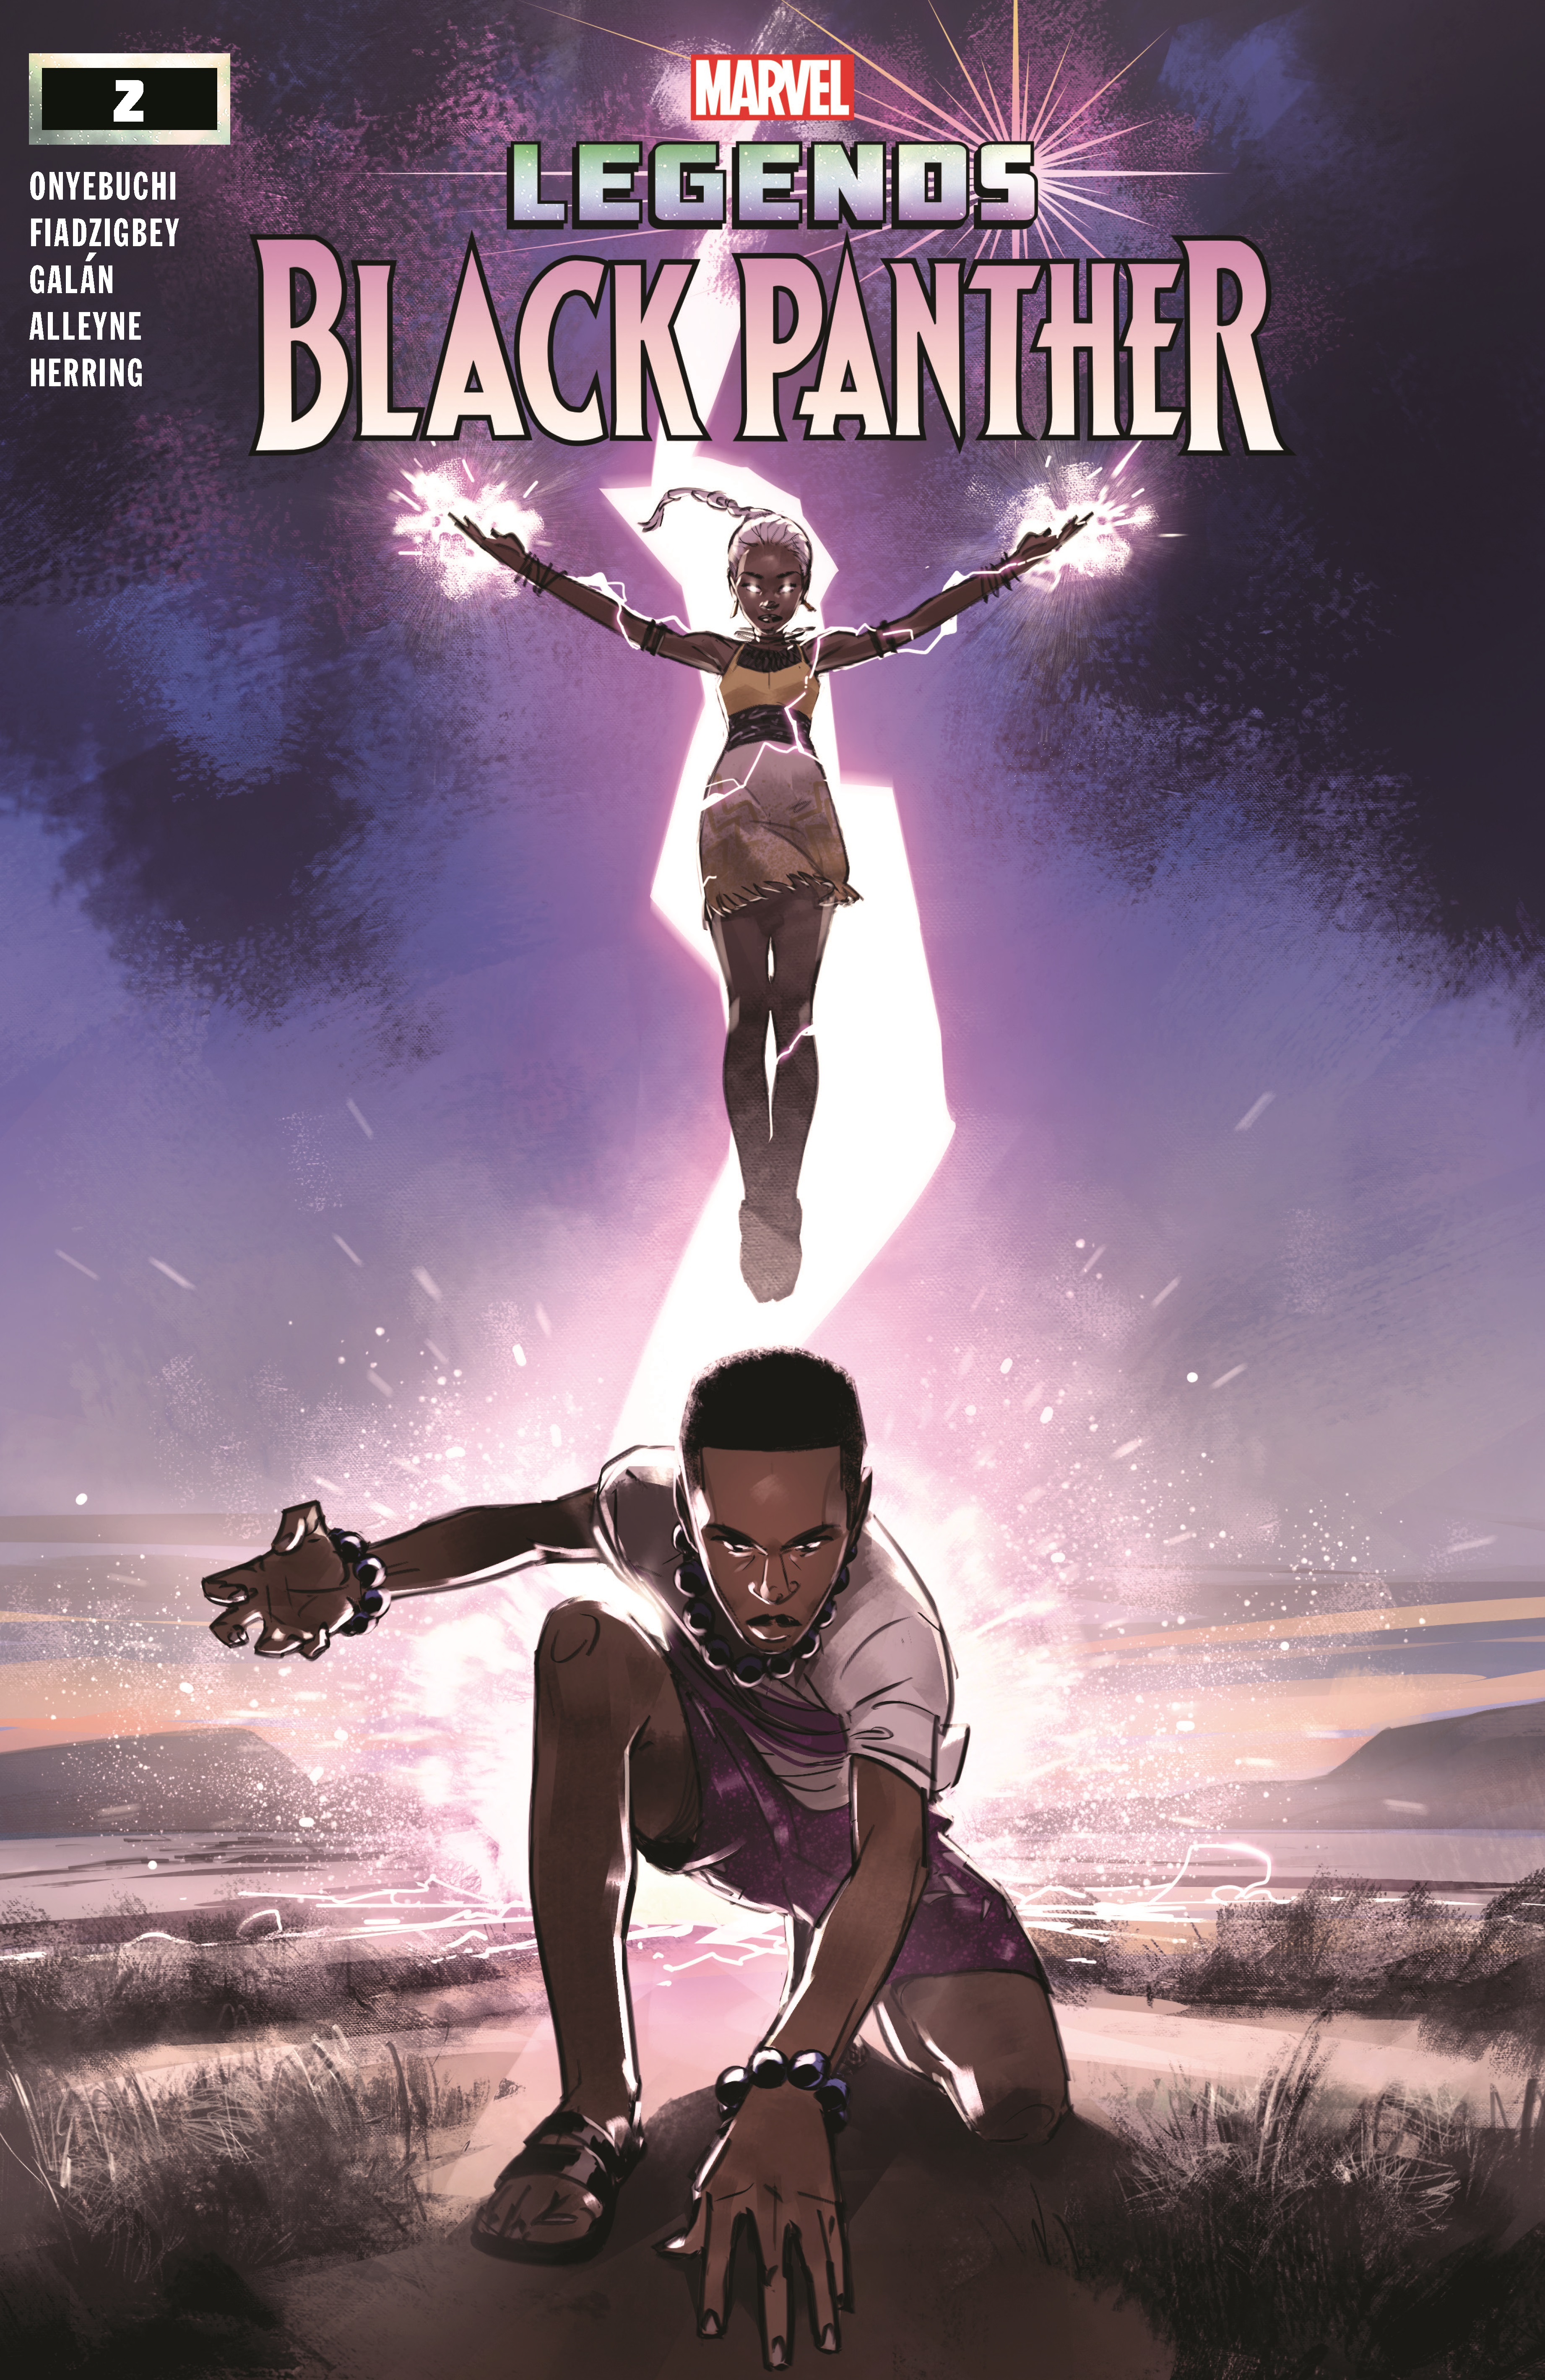 Black Panther Legends (2021) #2